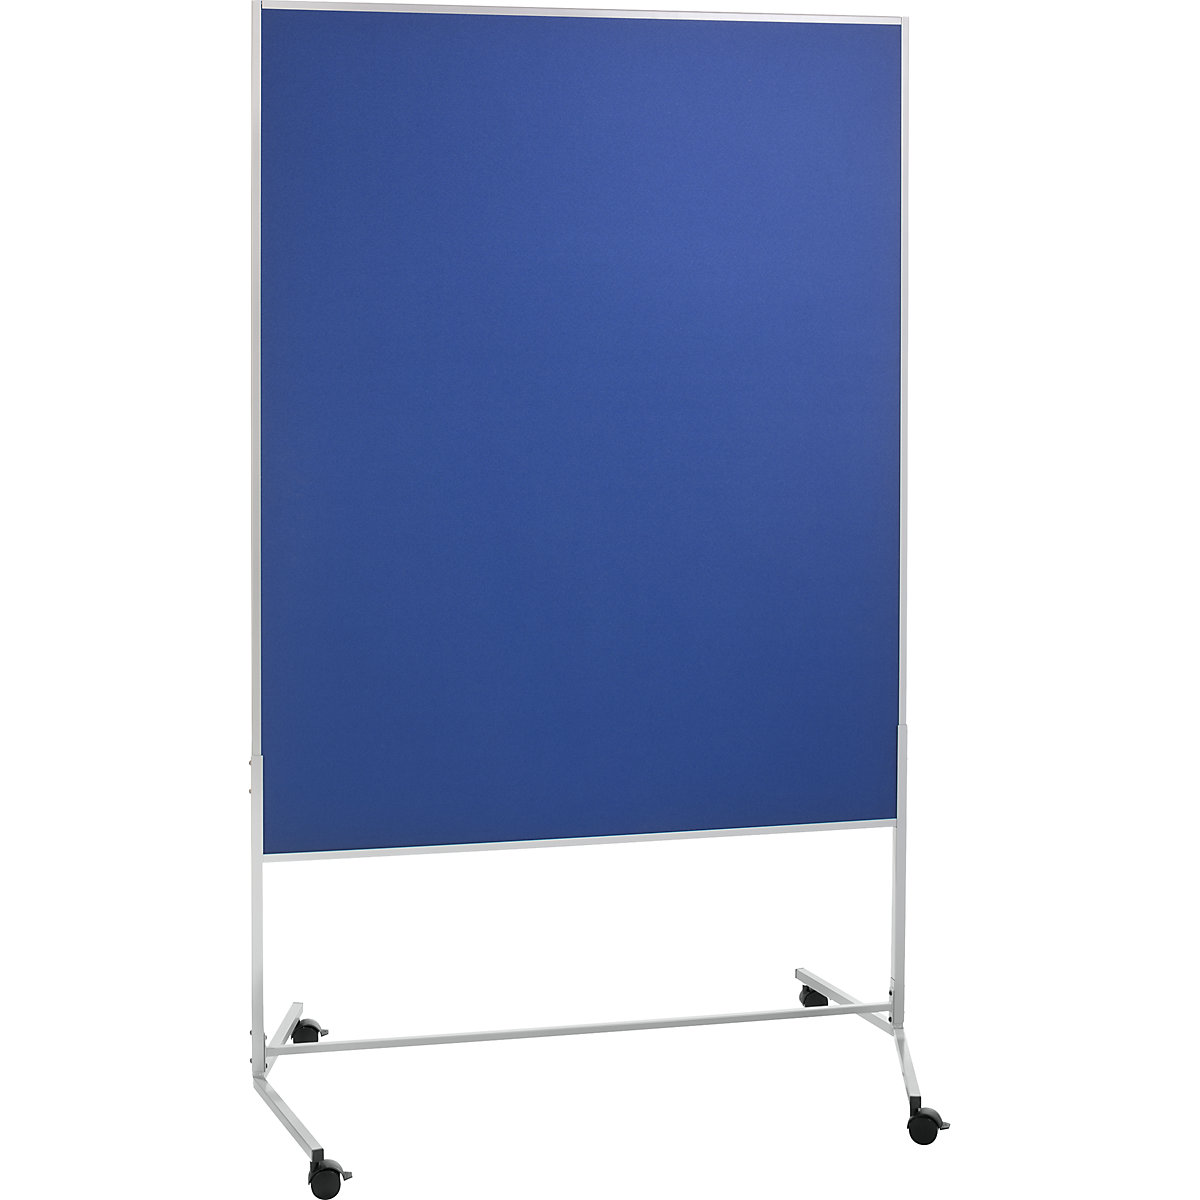 Presentatiewand, mobiel – eurokraft basic, textielbekleding, b x h = 1200 x 1500 mm, blauw-5